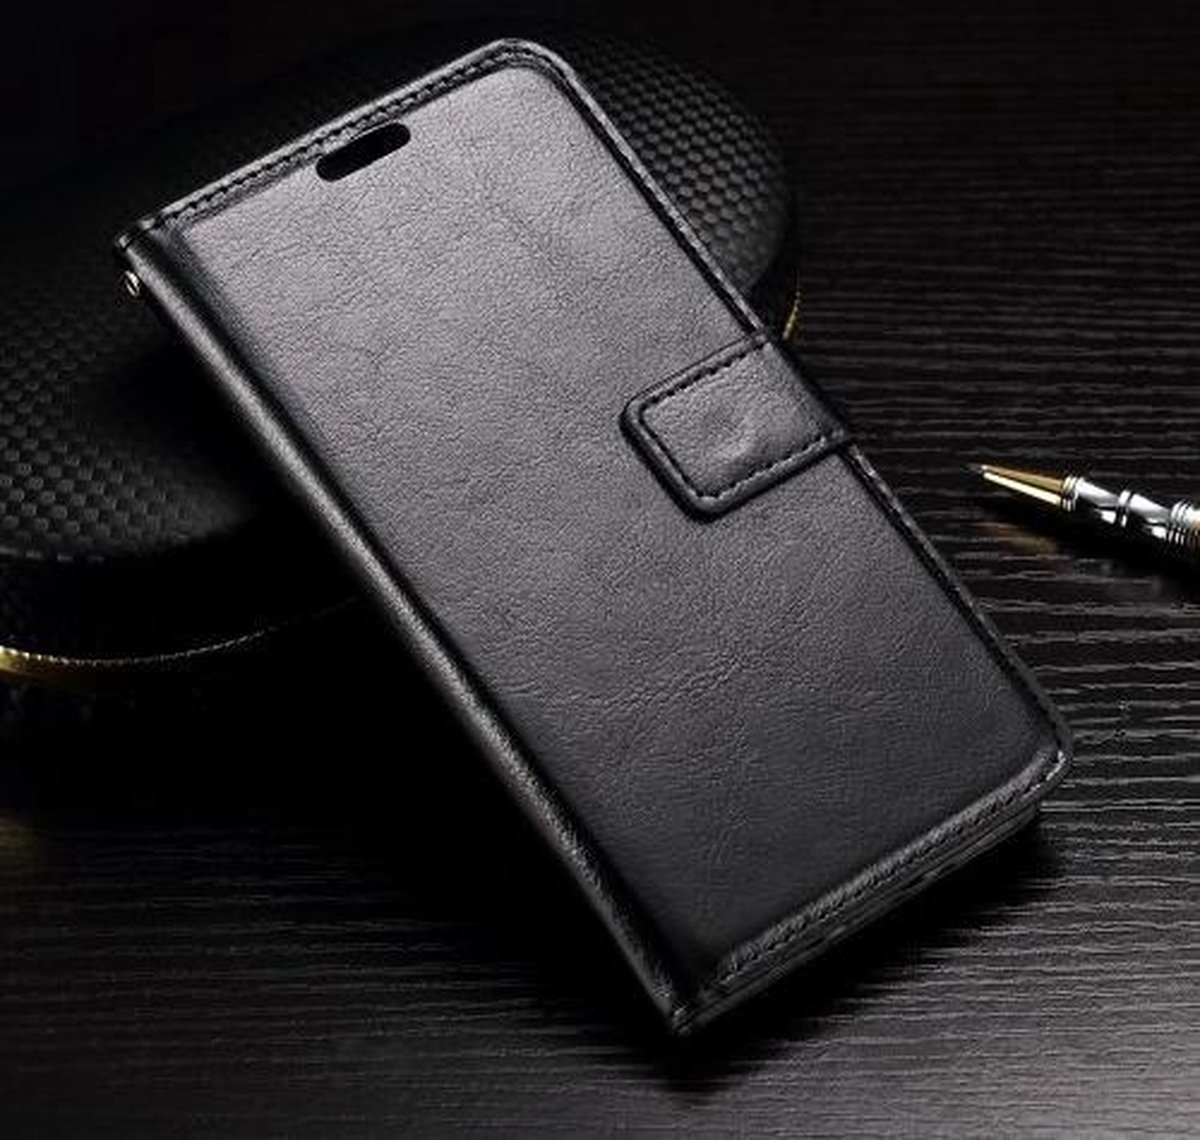 Cyclone cover wallet case hoesje LG G4c zwart